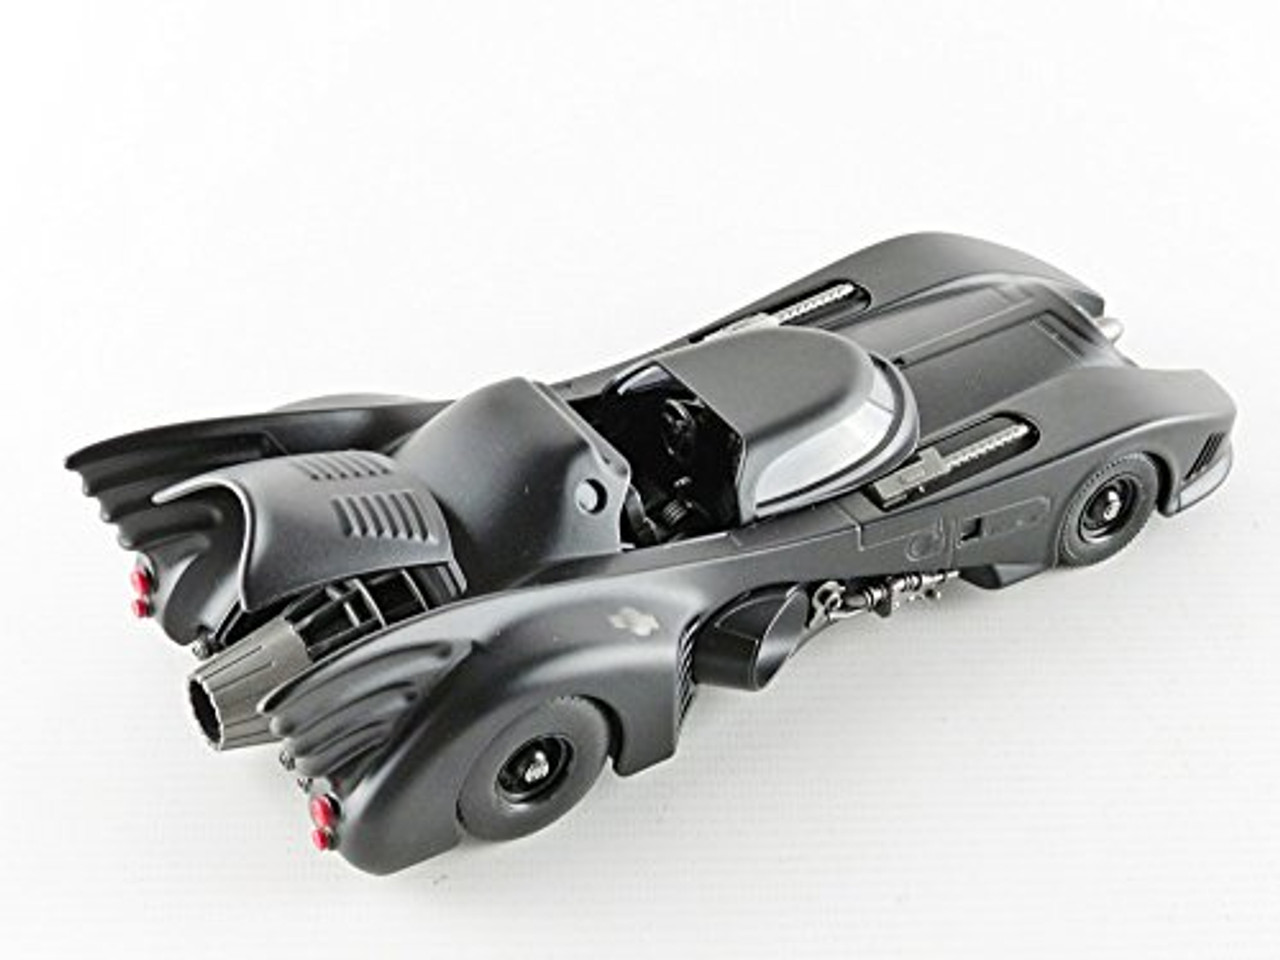 The Batman 1:18 Scale 2022 Batmobile Die-cast Vehicle With Batman